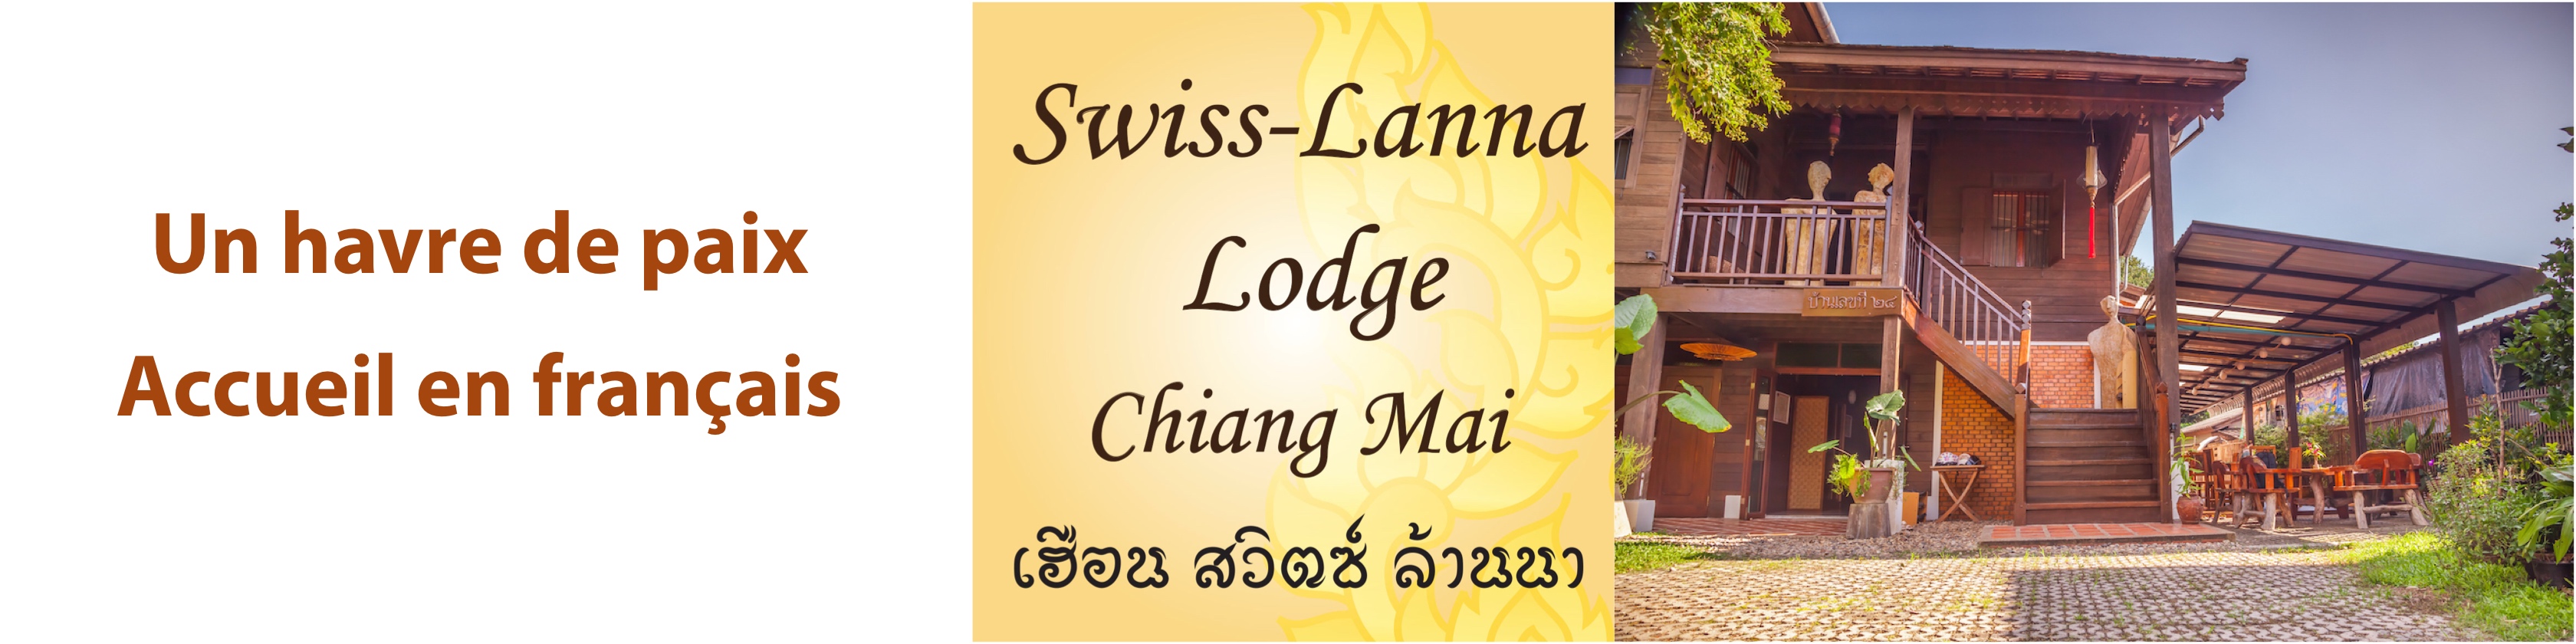 Swiss-Lanna Lodge, une auberge francophone fort appréciée à Chiang Mai